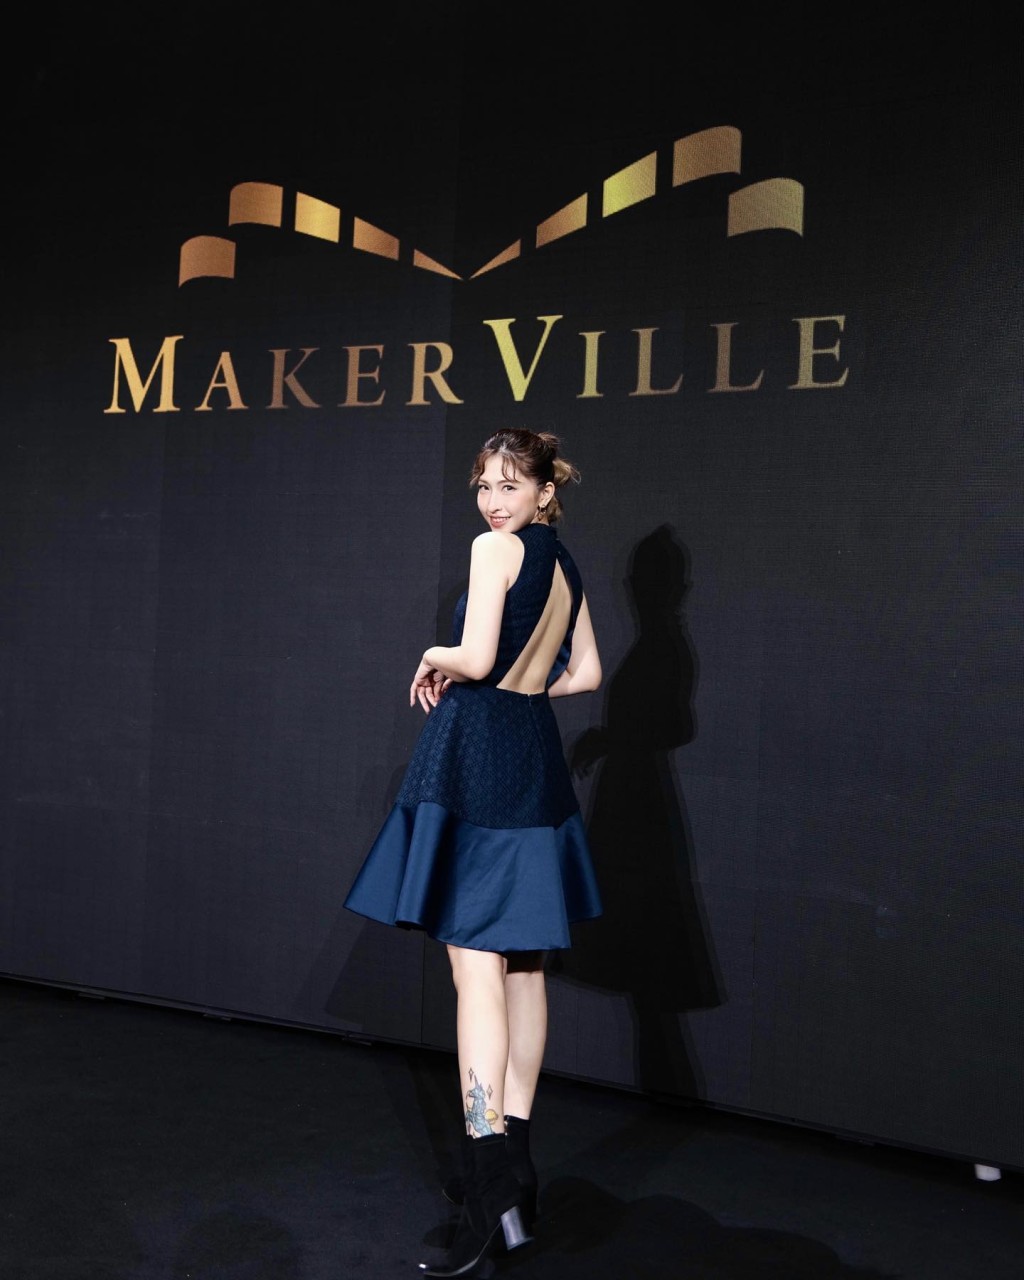 蔡寶欣是MakerVille藝人。